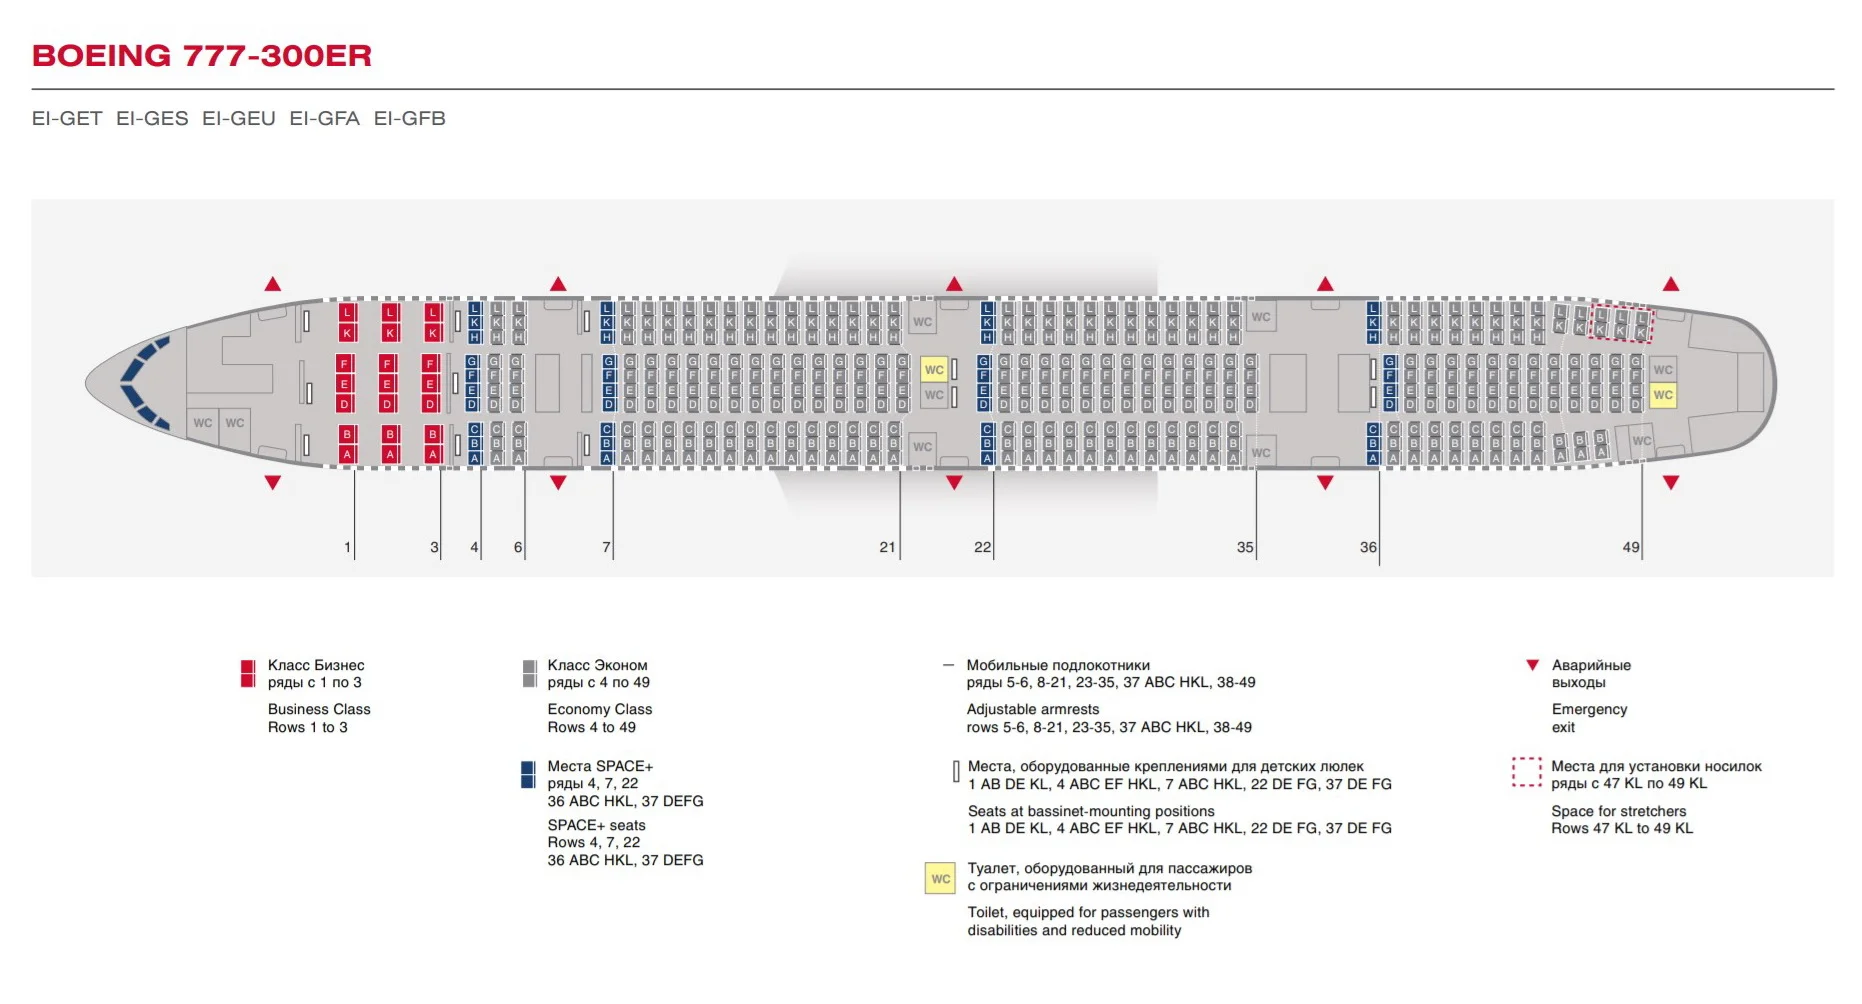 Обзор Boeing 777 а/к Россия — фото, видео, схема салона, питание, система  развлечений